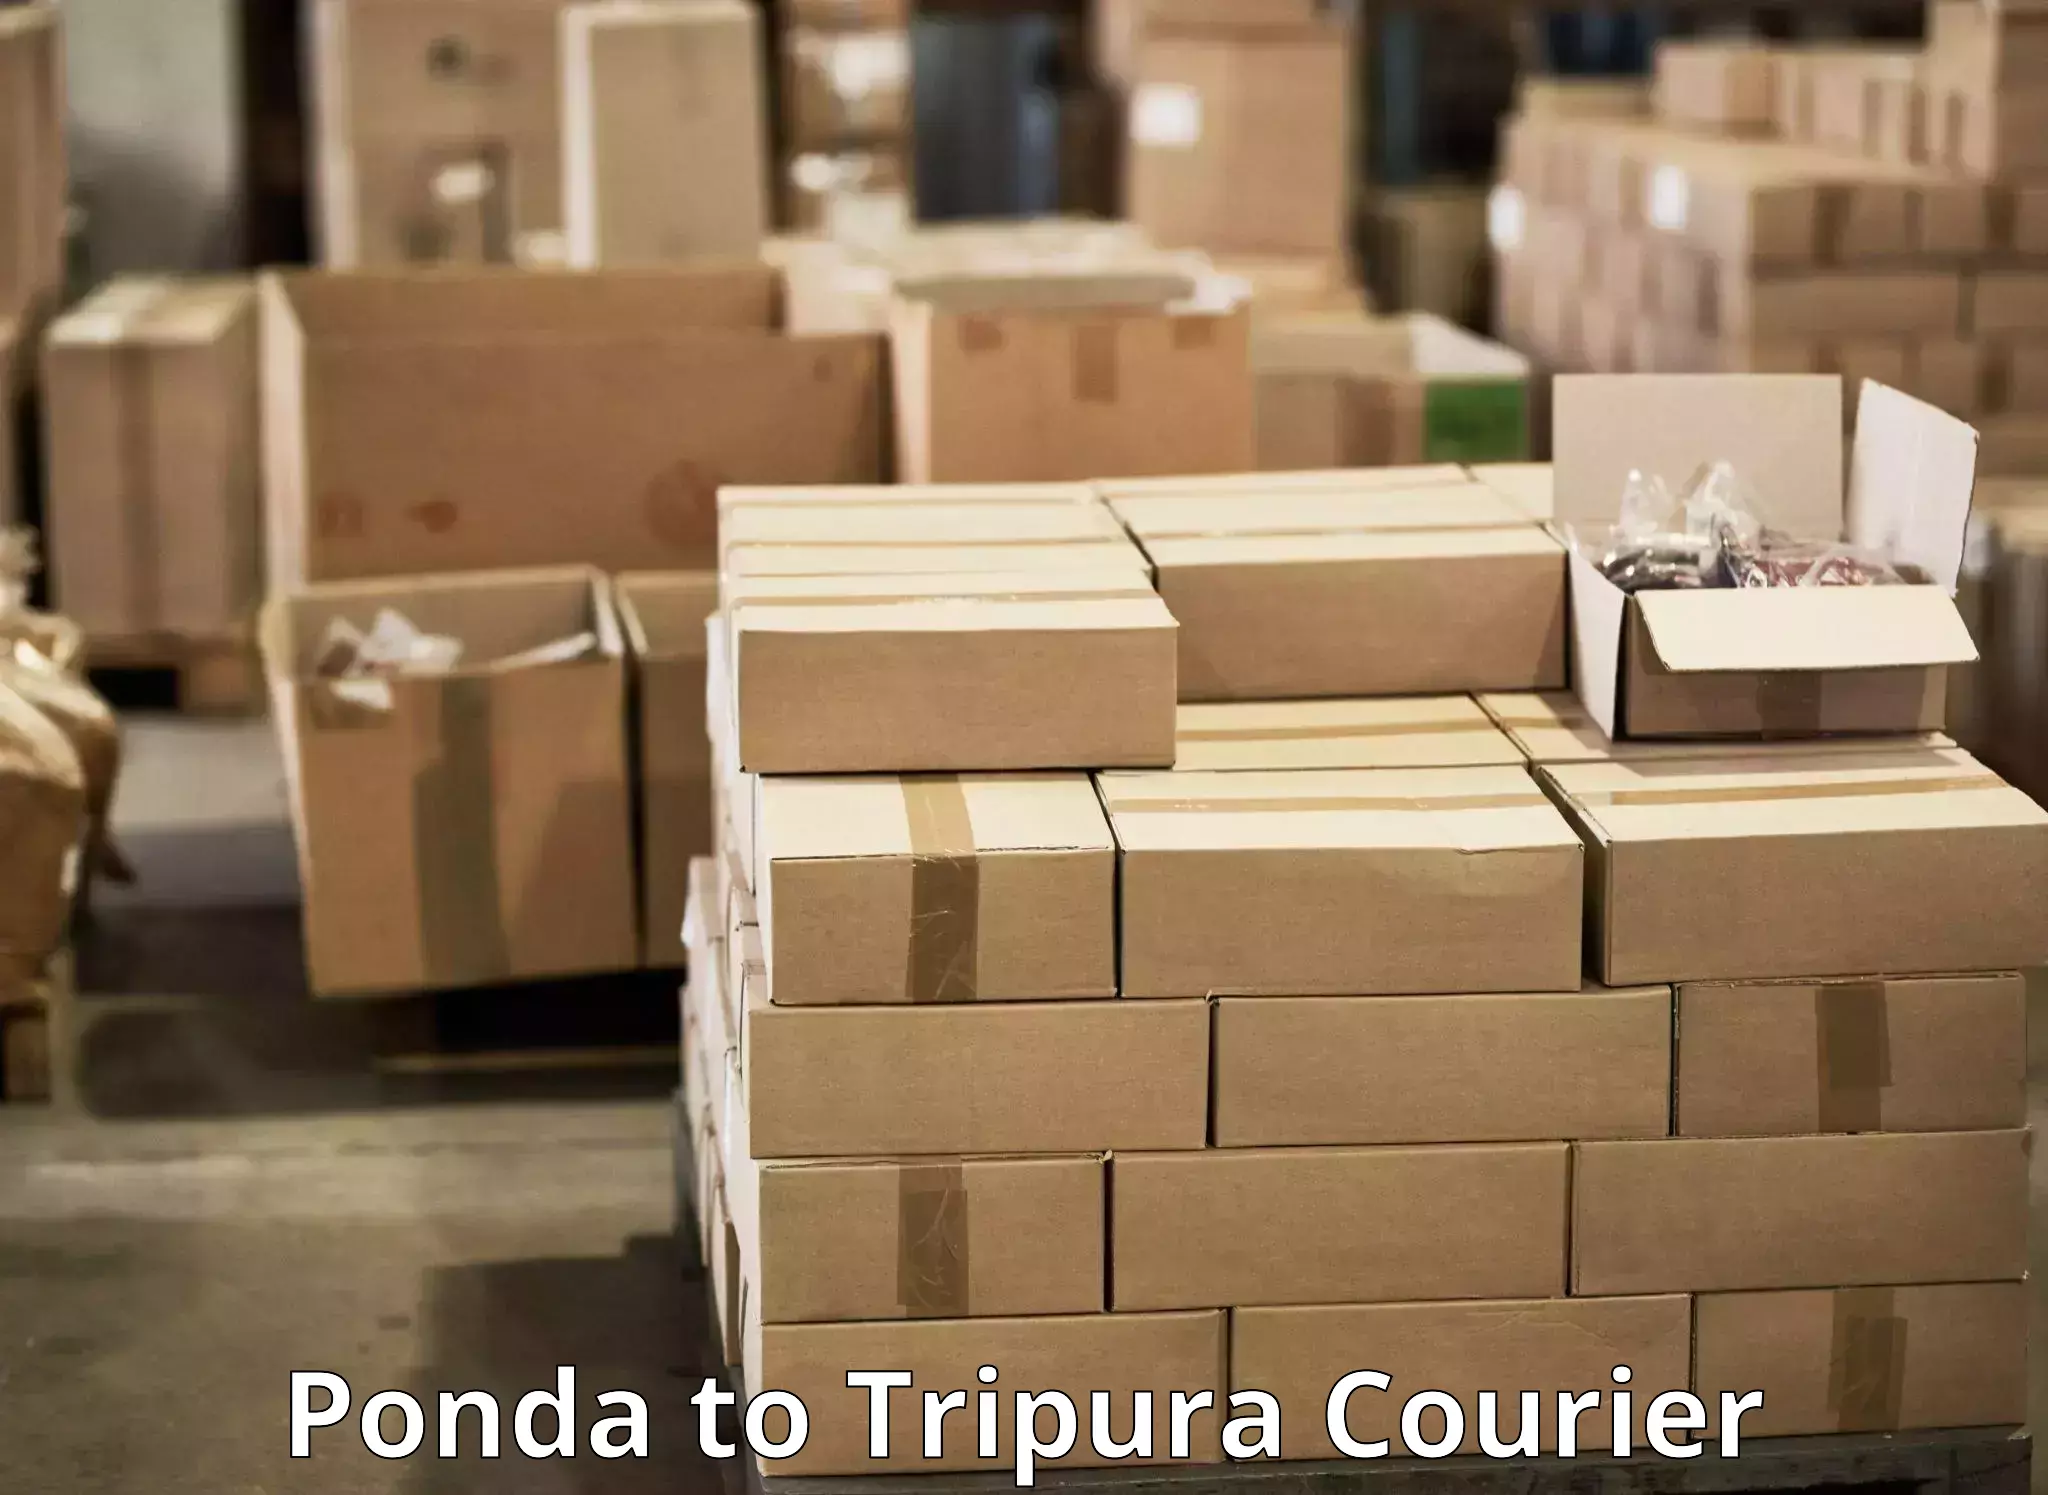 Nationwide courier service Ponda to Manu Bazar